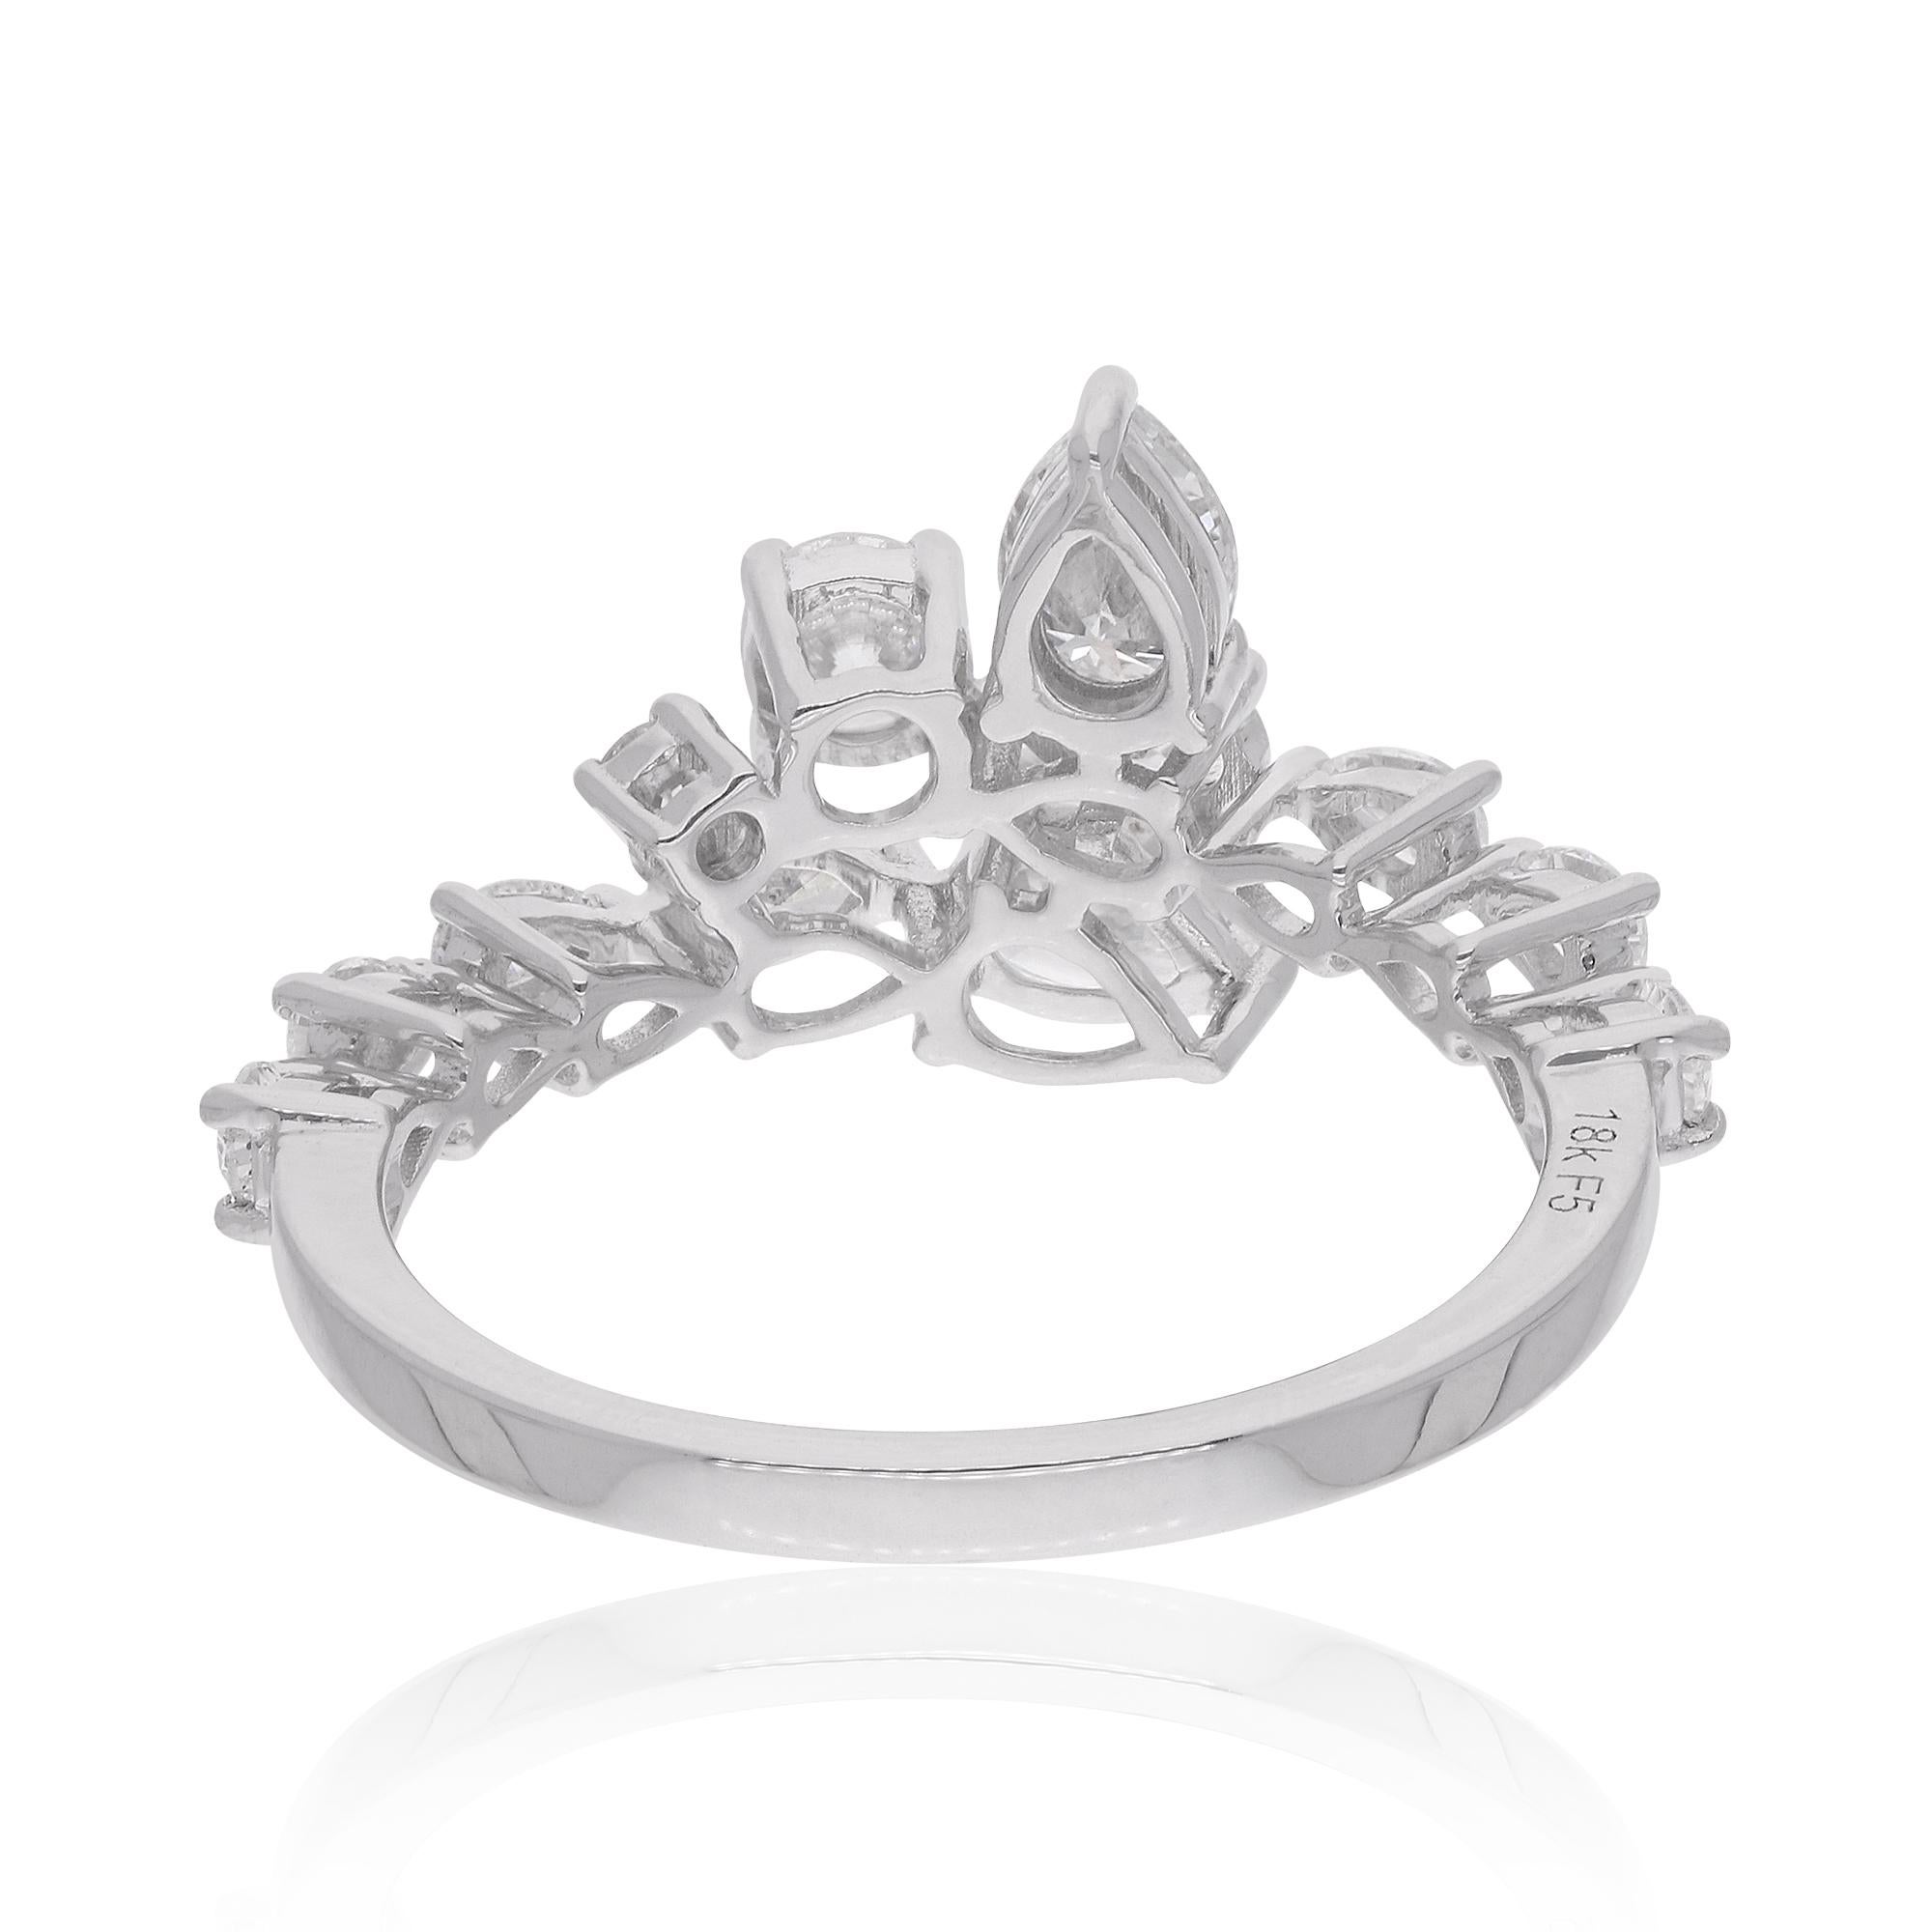 Eine perfekte Mischung aus stilvollem und elegantem Design Ring mit 18k Weißgold mit Diamant. Dies ist unabdingbar, um Ihnen eine auffällige Aufmerksamkeit zu verschaffen.

✧✧Willkommen in unserem Geschäft Spectrum Jewels✧✧

